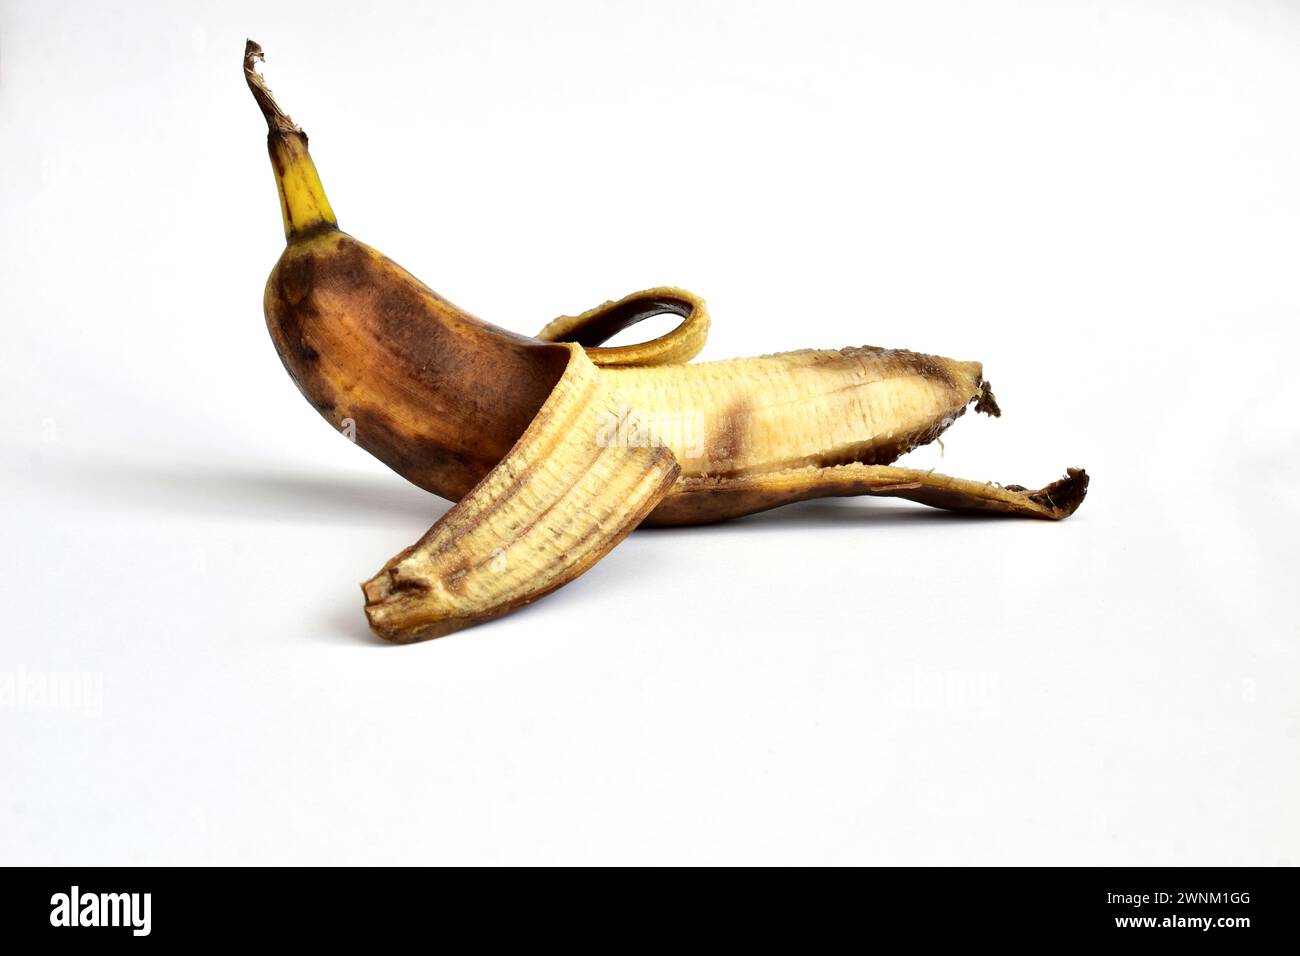 Sur un fond blanc se trouve une banane qui n'a pas été complètement pelée. La peau de banane a des taches sombres. La banane est trop mûre. Banque D'Images